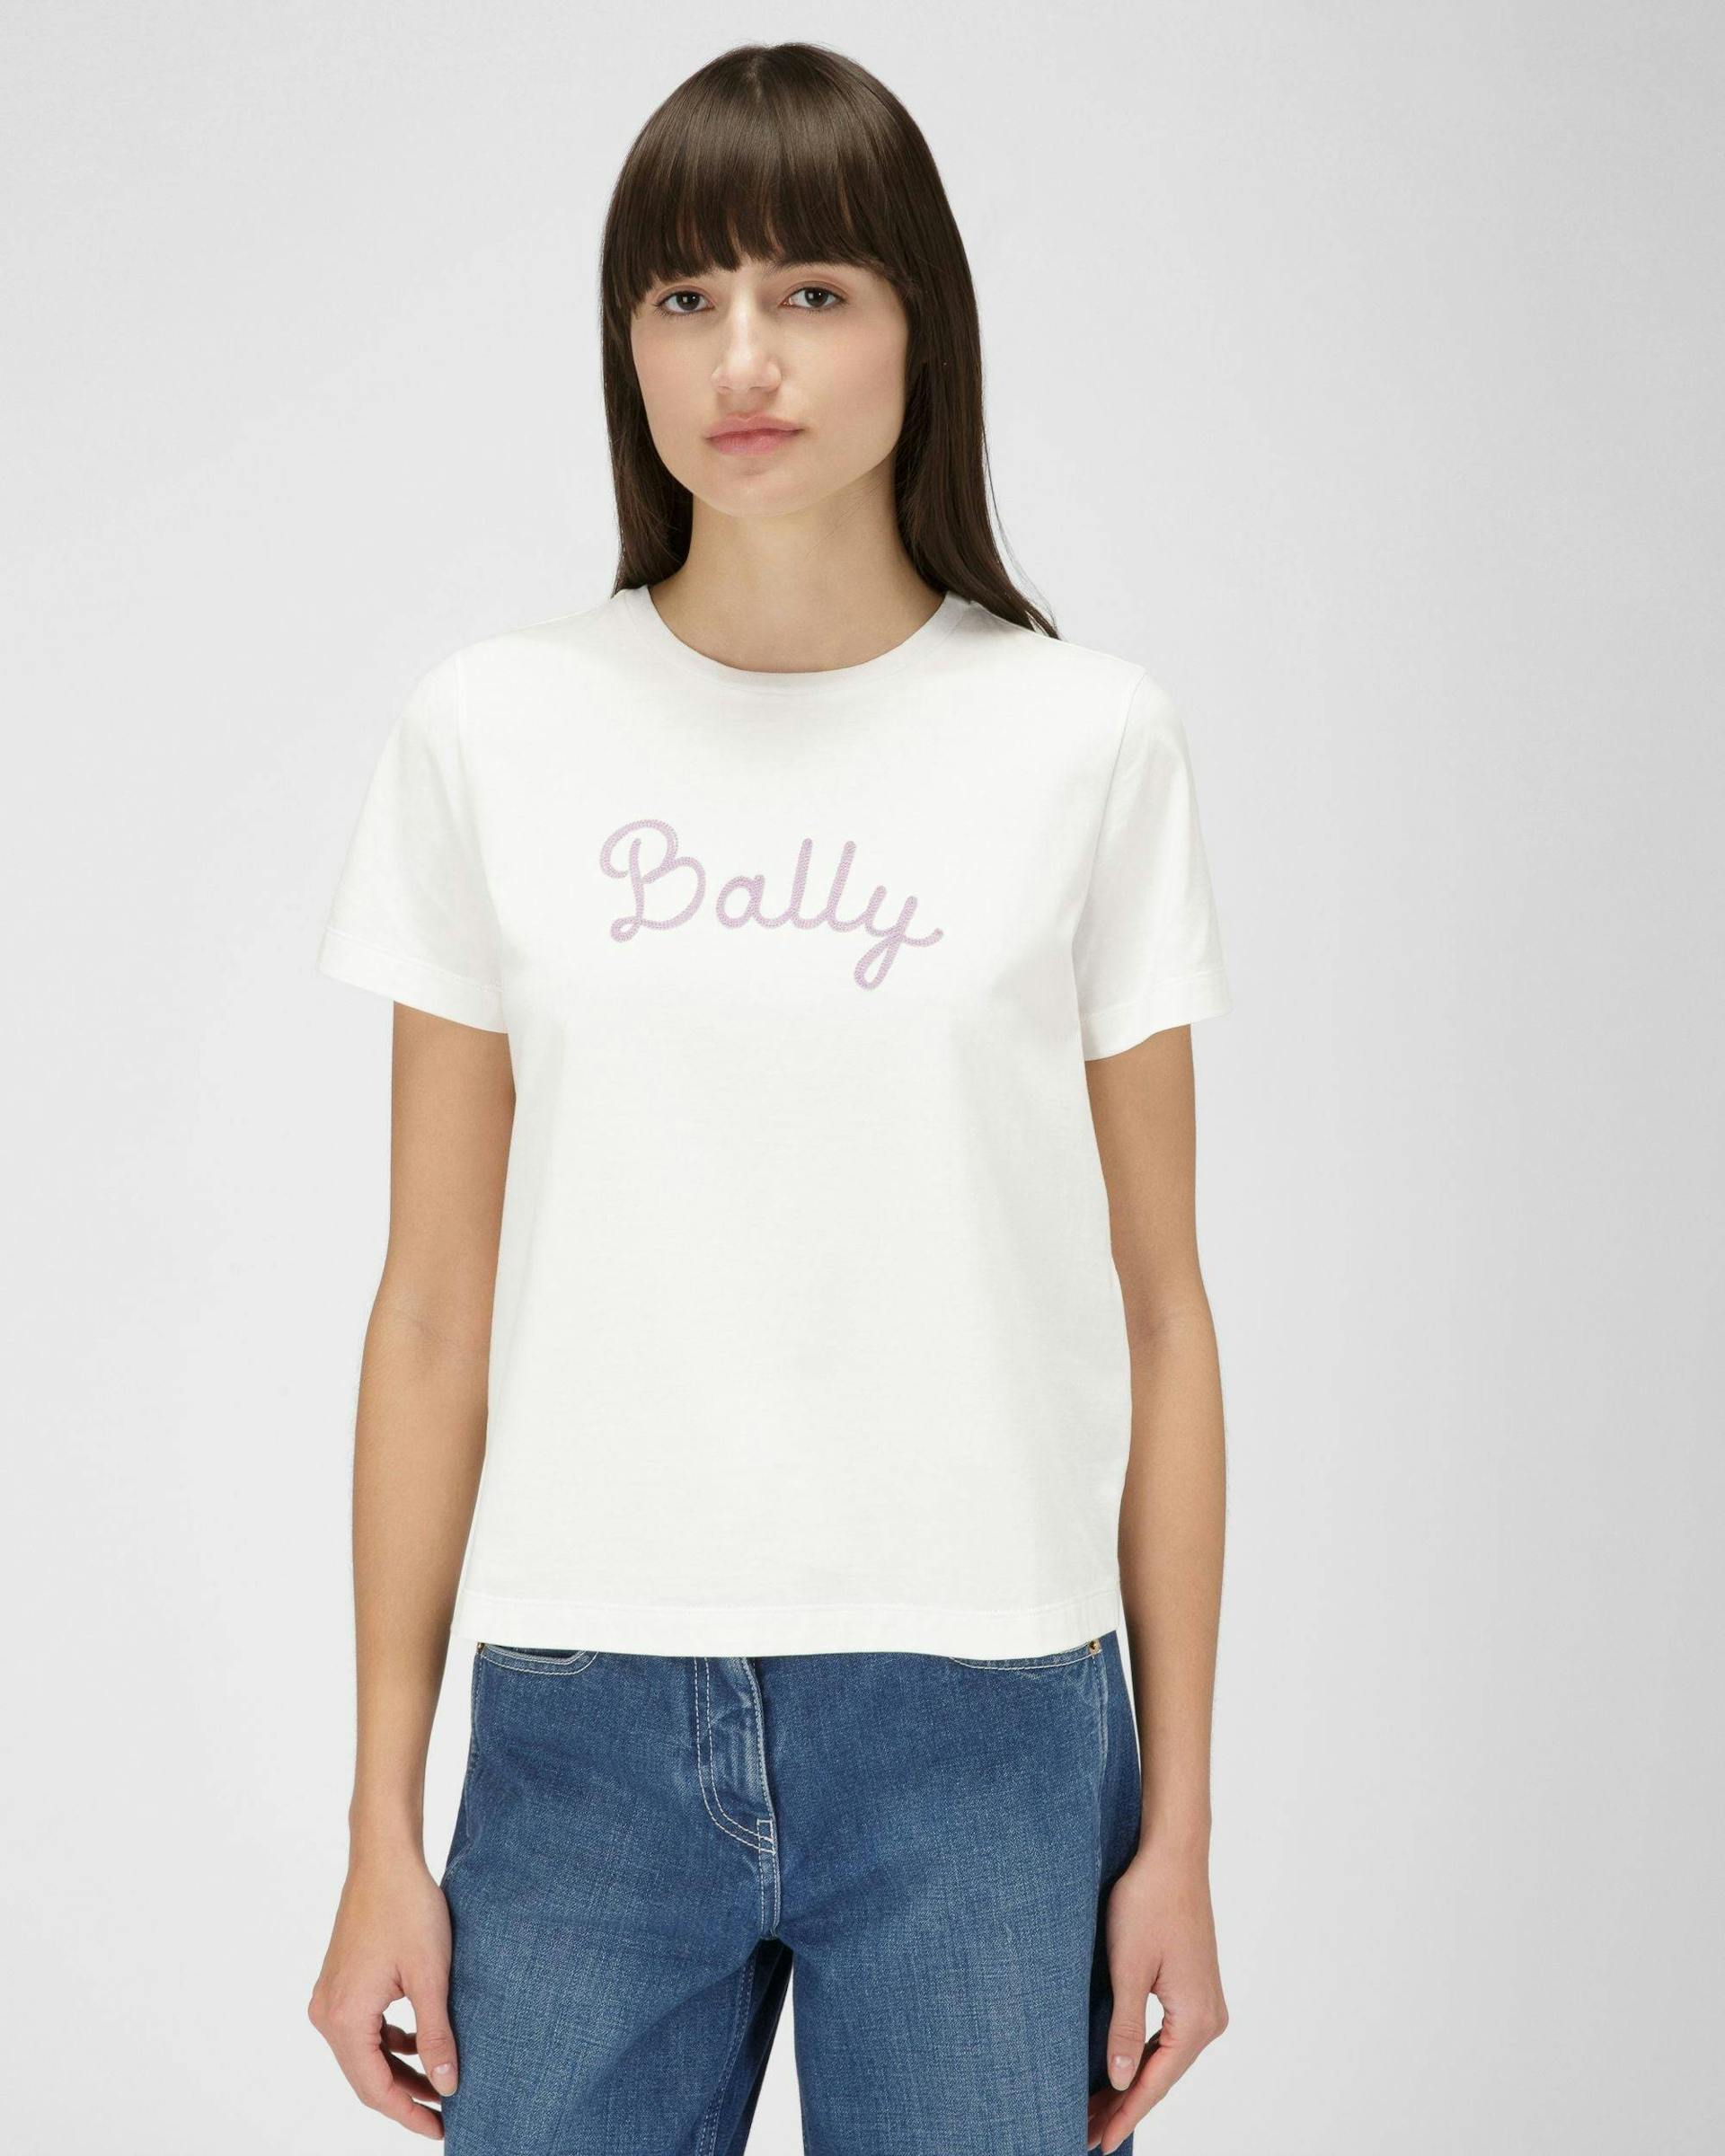 T-Shirt Aus Elfenbeinfarbener Baumwolle - Damen - Bally - 01